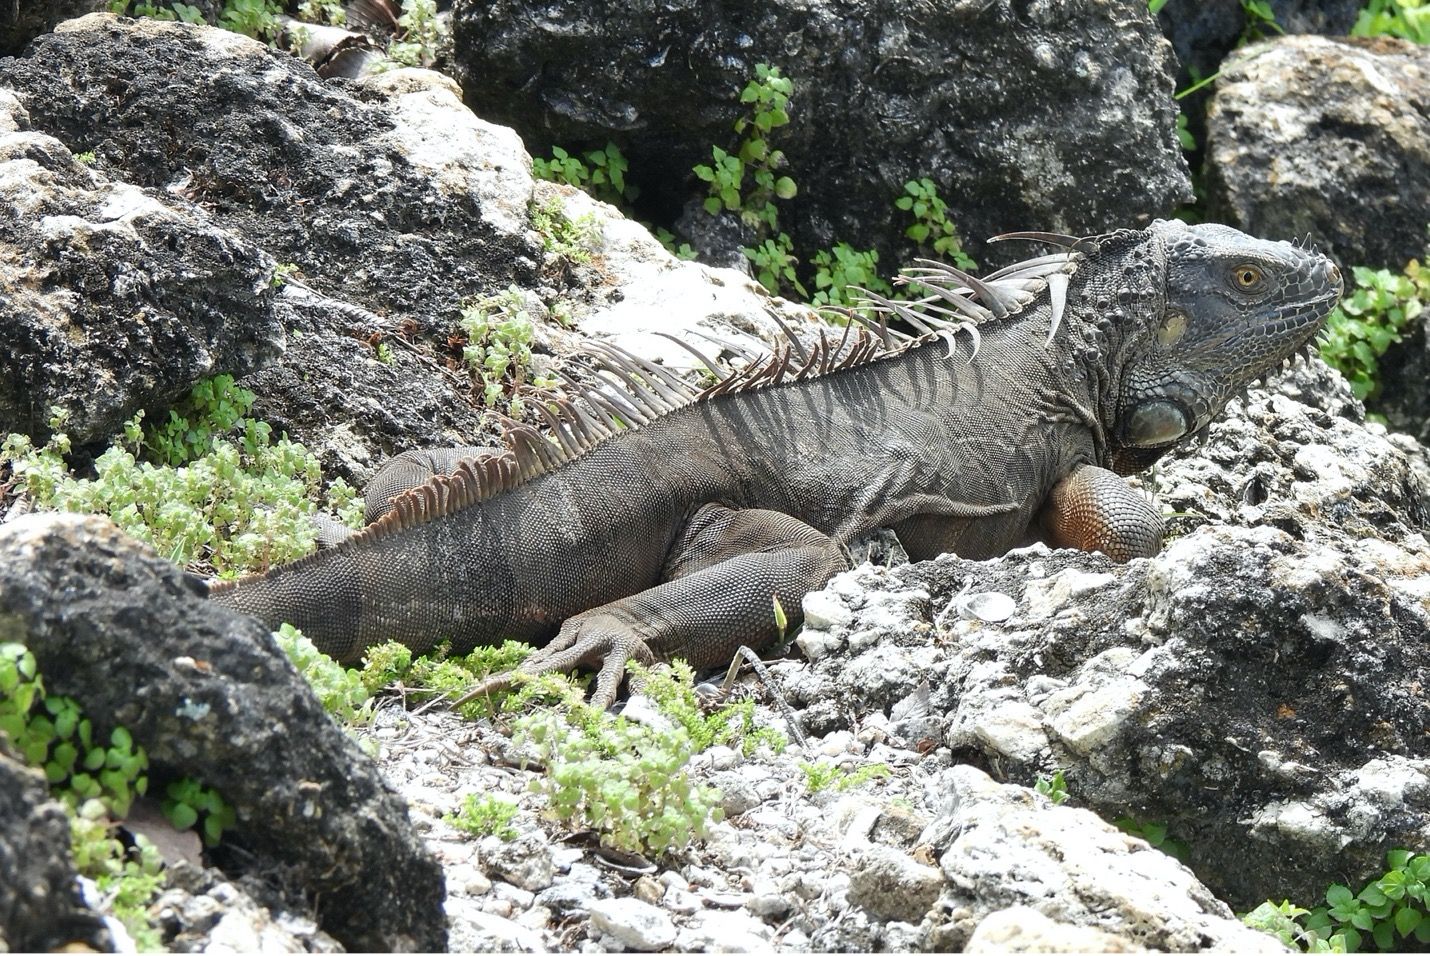 No es raro ver una iguana verde (Iguana iguana) adulta que no es verde, como este adulto de color marrón grisáceo. Todas las iguanas verdes adultas, independiente de su color, tienen una fila prominente de escamas en forma de espinas en el dorso.